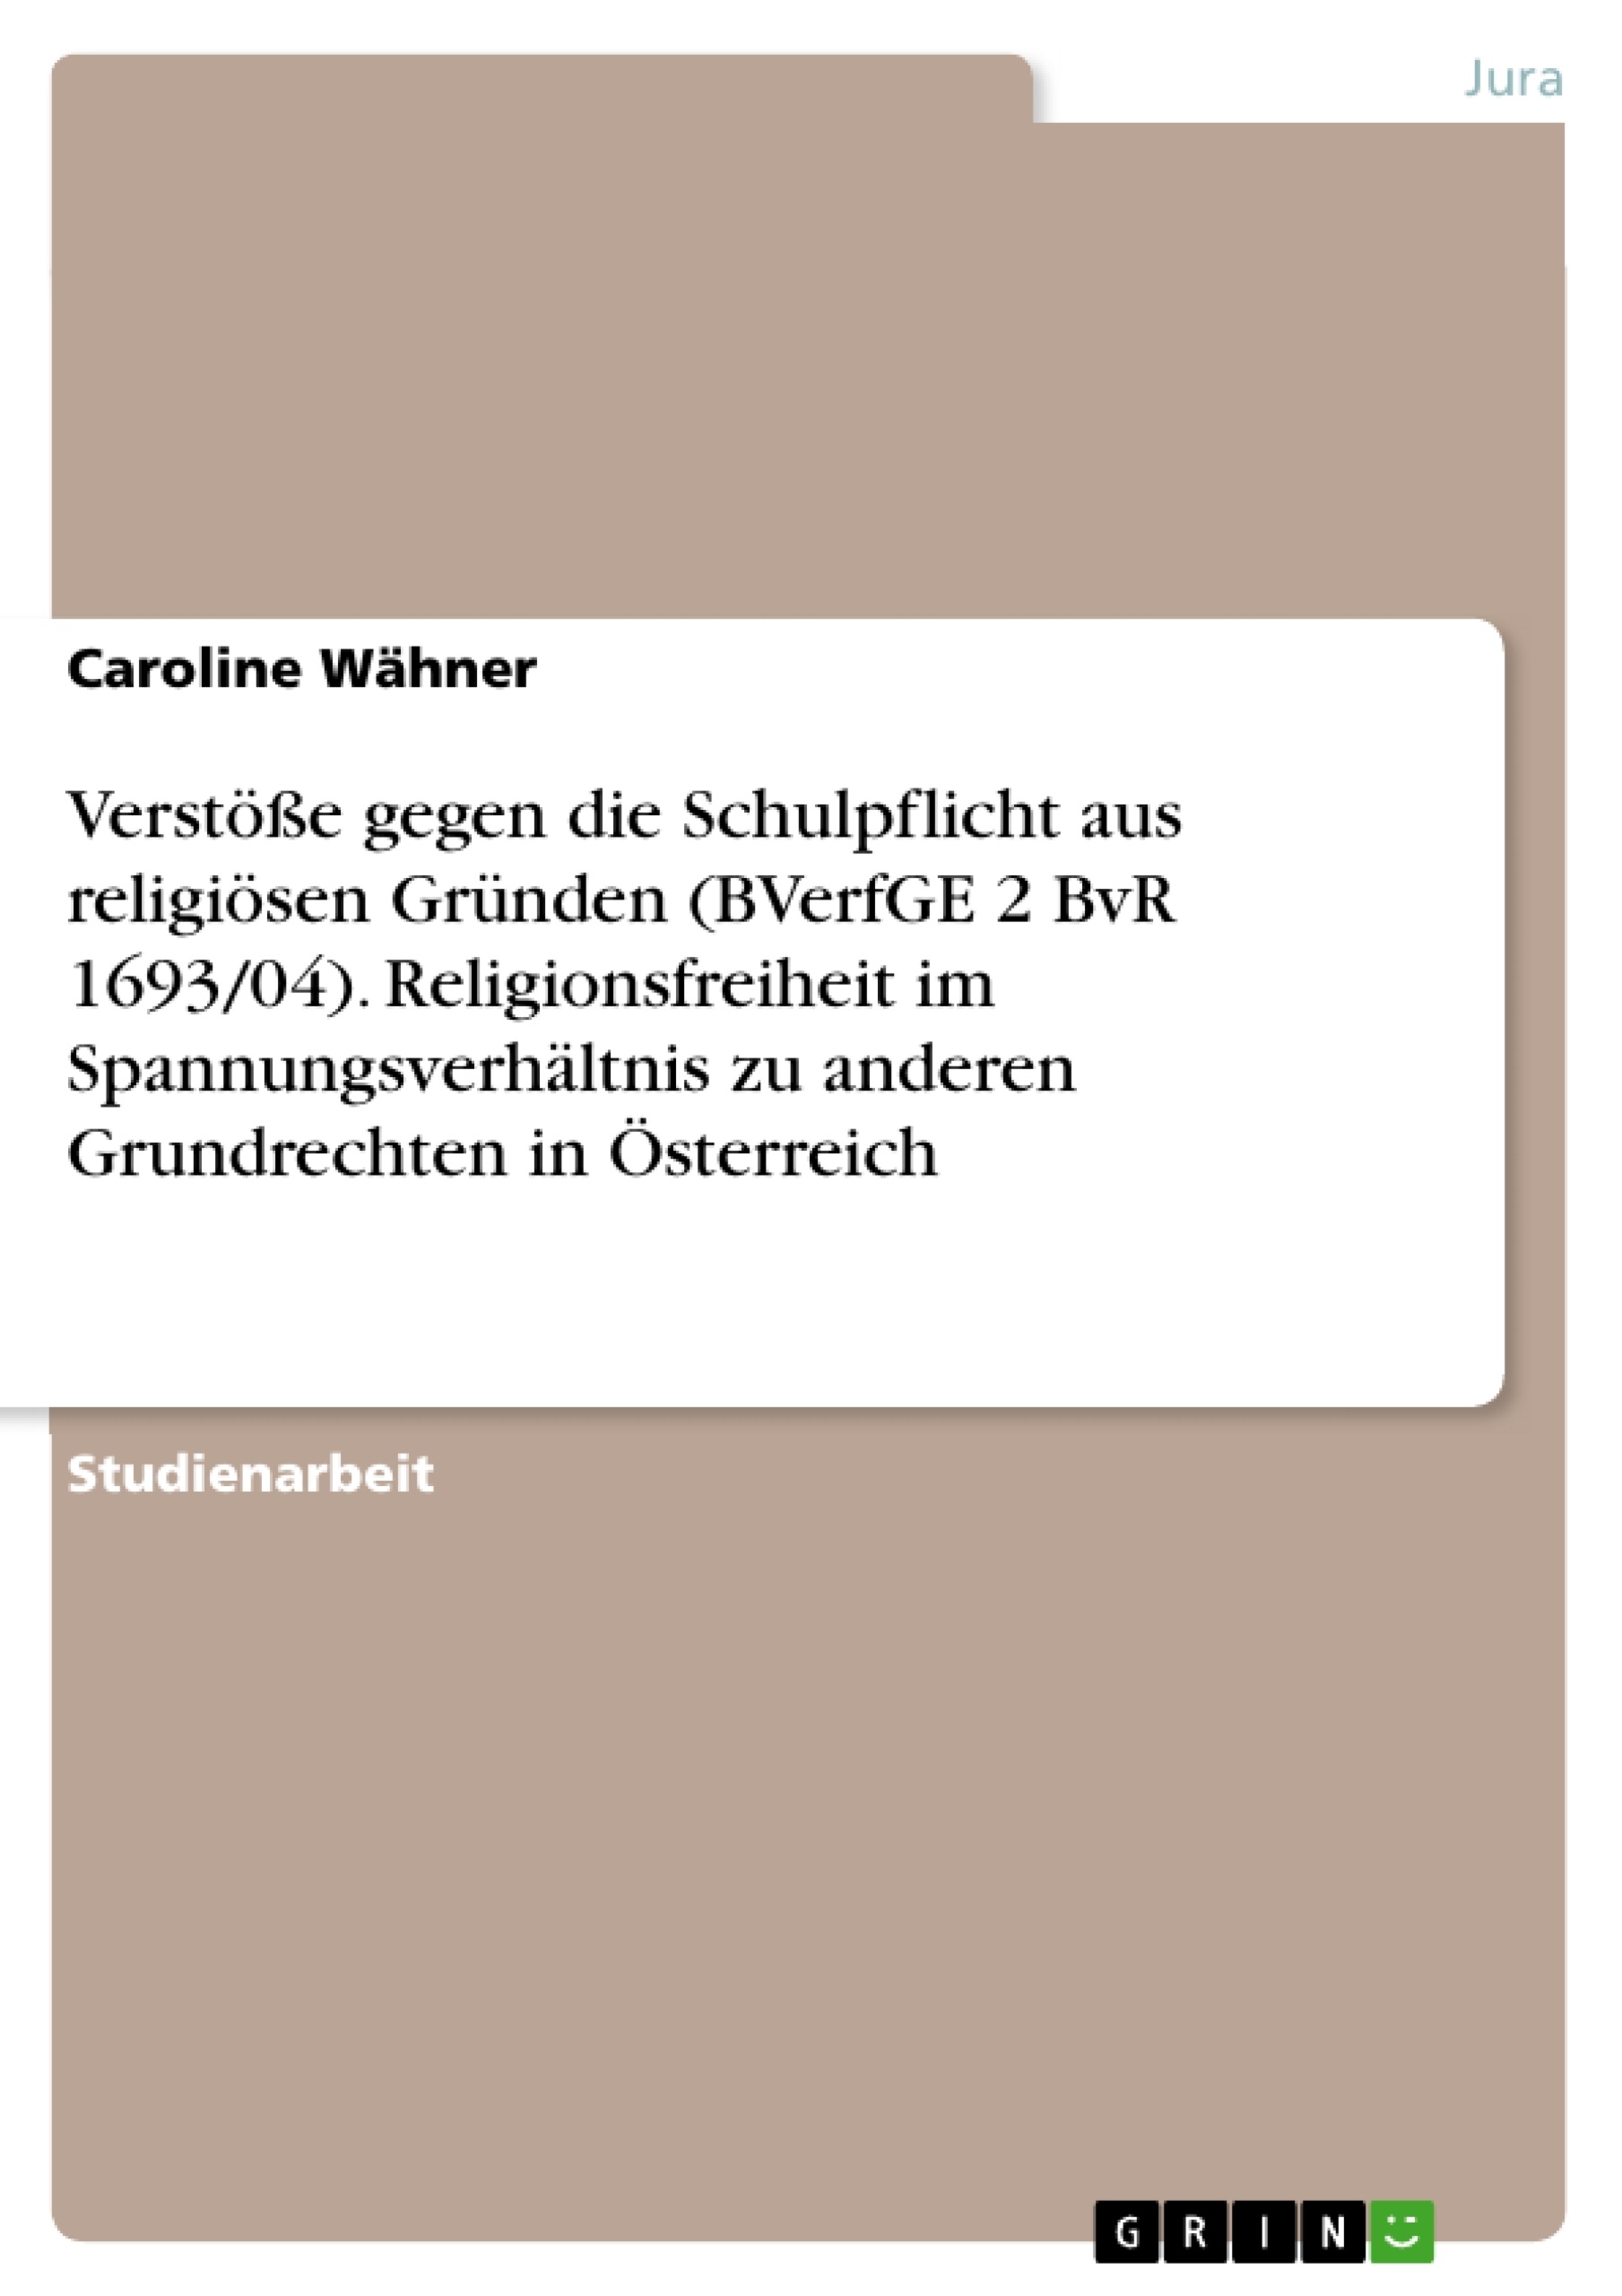 Titre: Verstöße gegen die Schulpflicht aus religiösen Gründen (BVerfGE 2 BvR 1693/04). Religionsfreiheit im Spannungsverhältnis zu anderen Grundrechten in Österreich